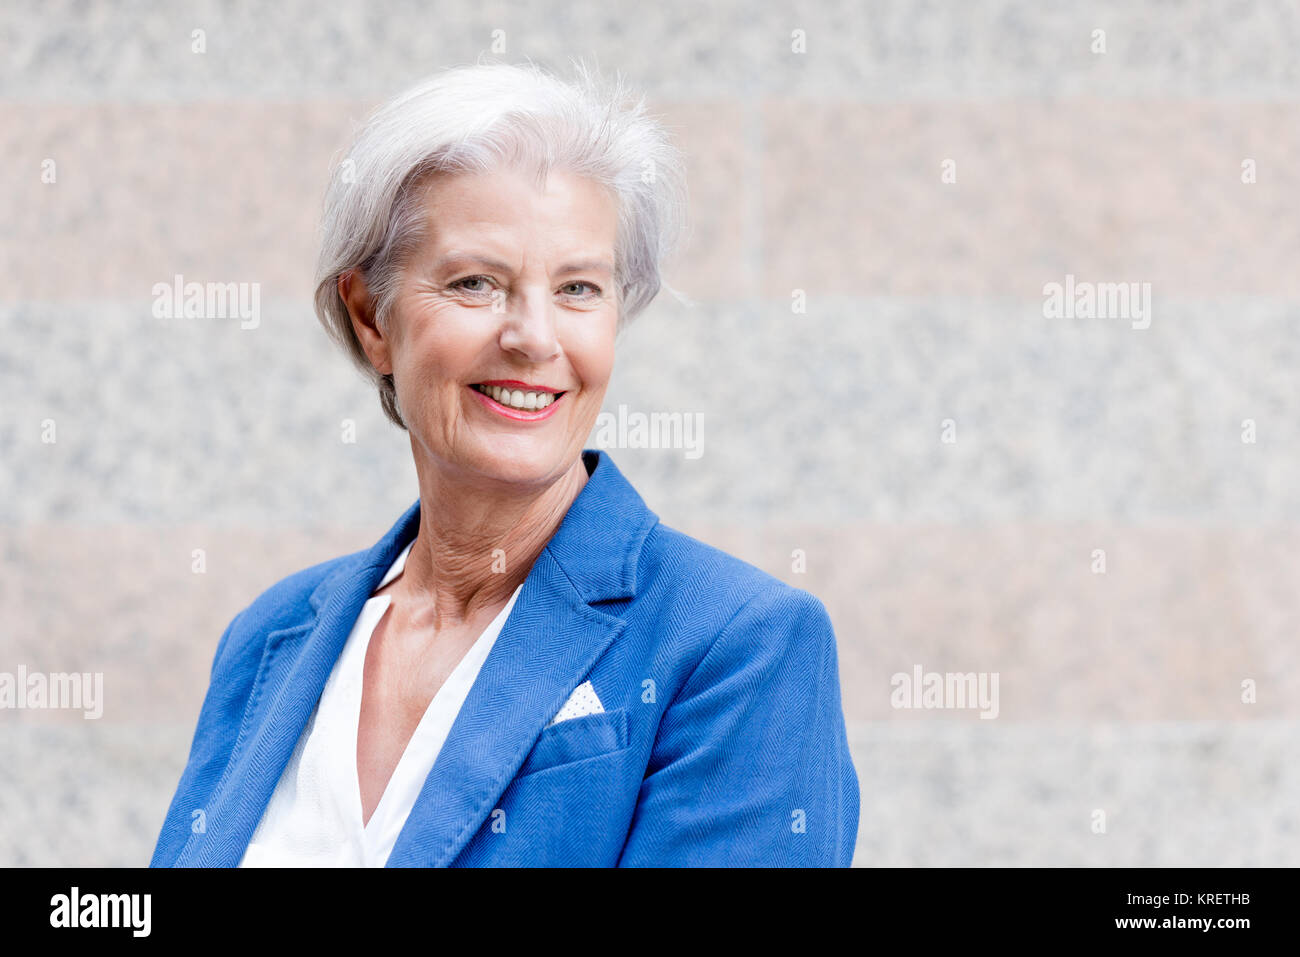 Lächelnde Seniorin mit grauem Haar vor einer Wand Foto Stock